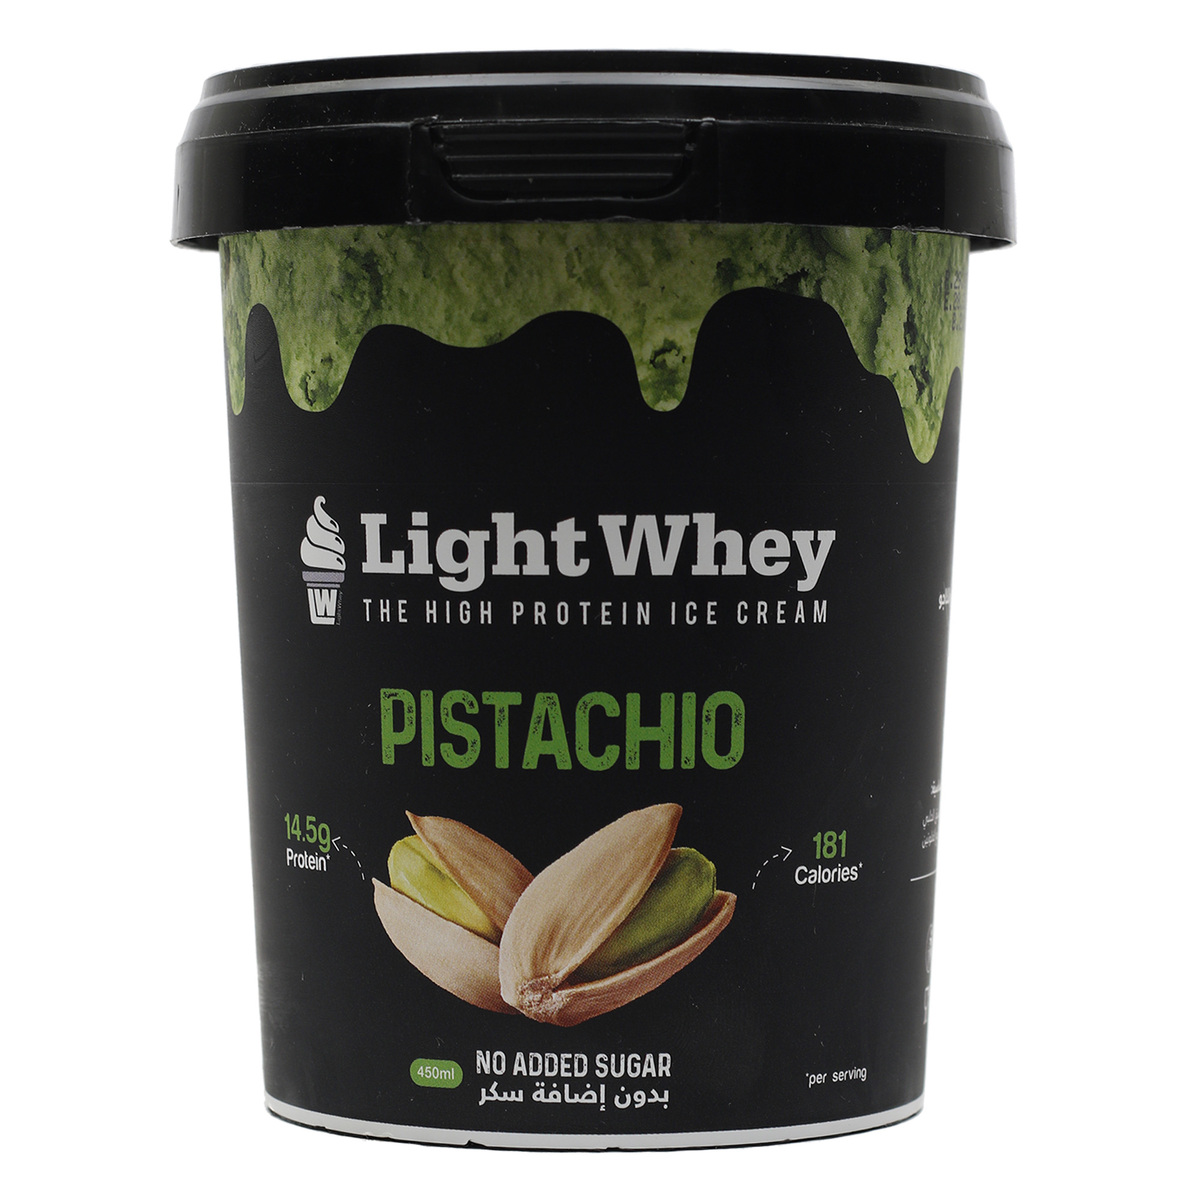 Light Whey Pistachio Ice Cream 450ml